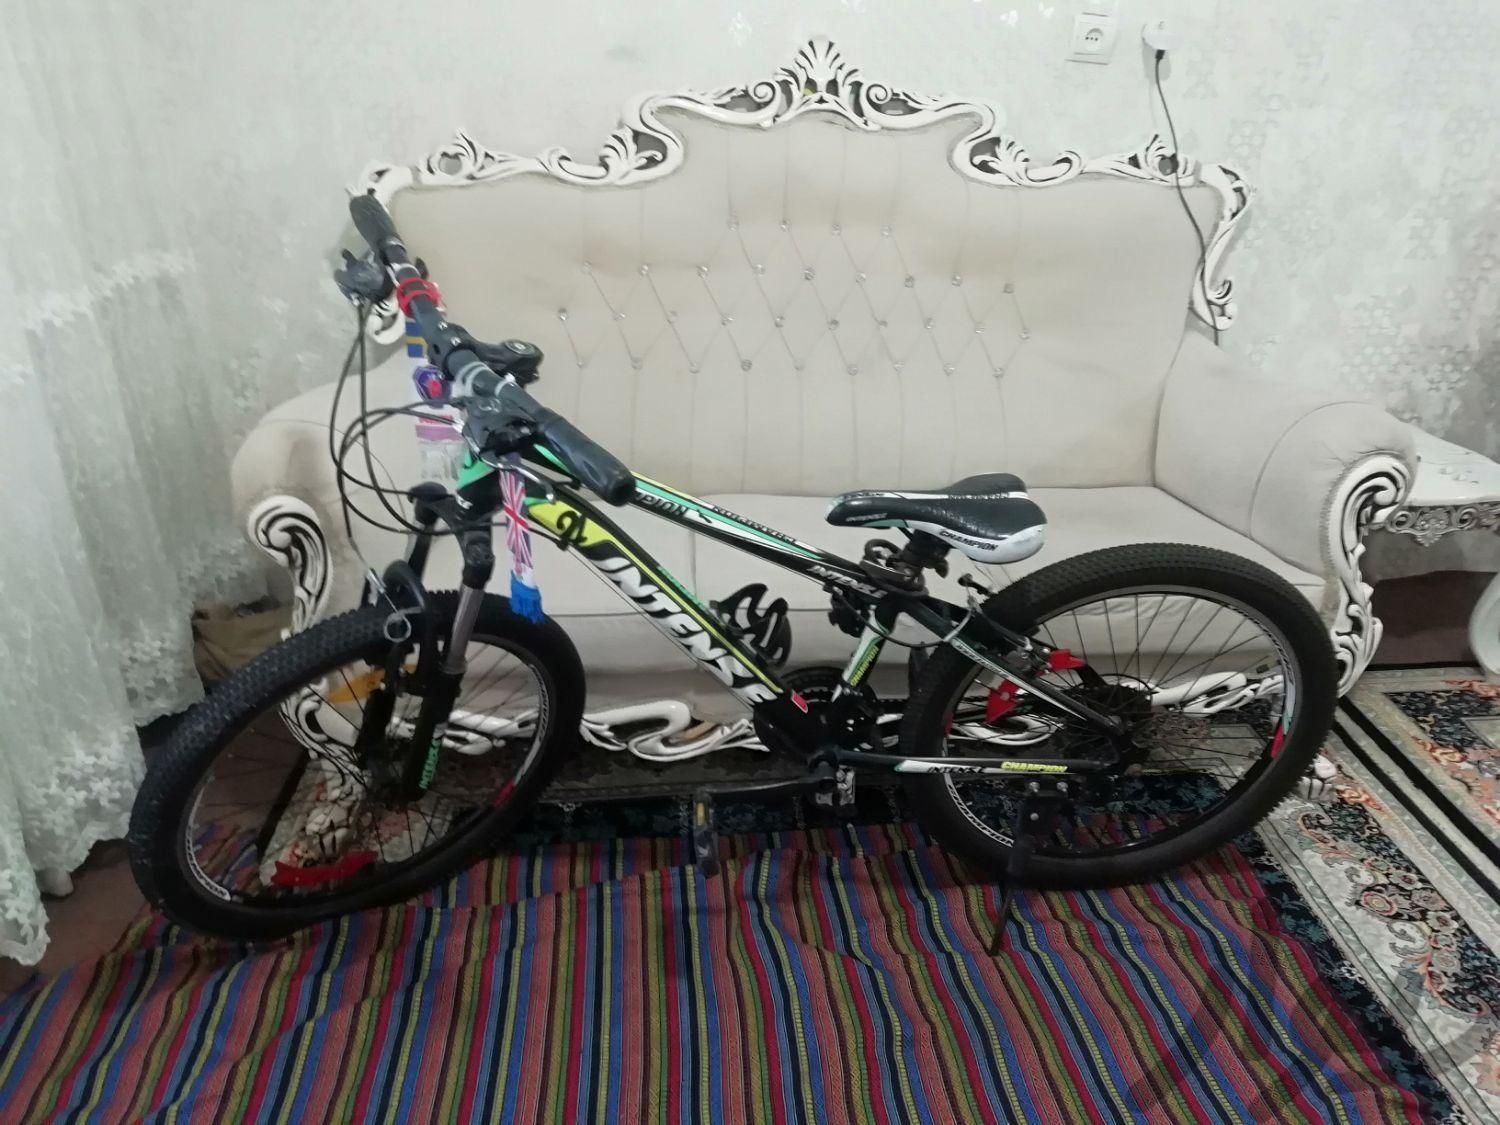 دوچرخه سایز 24|دوچرخه، اسکیت، اسکوتر|تهران, شادآباد|دیوار